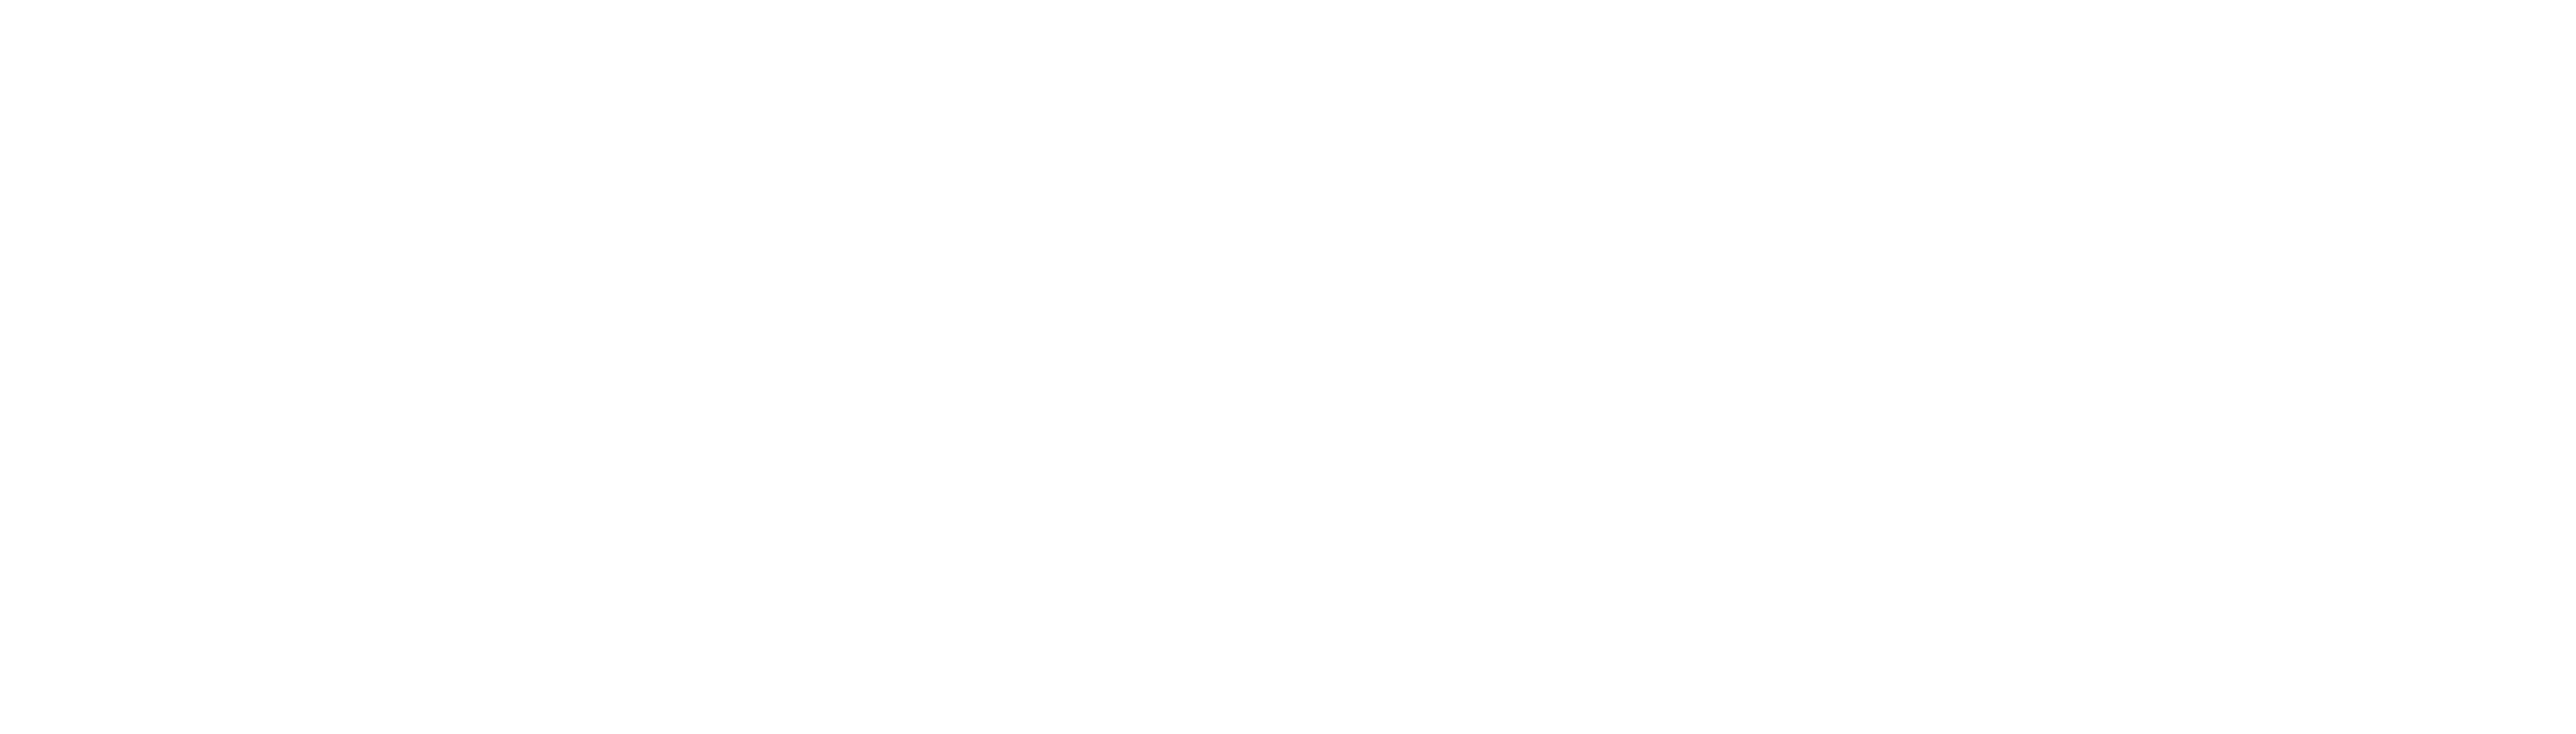 Avaya-Logo-White